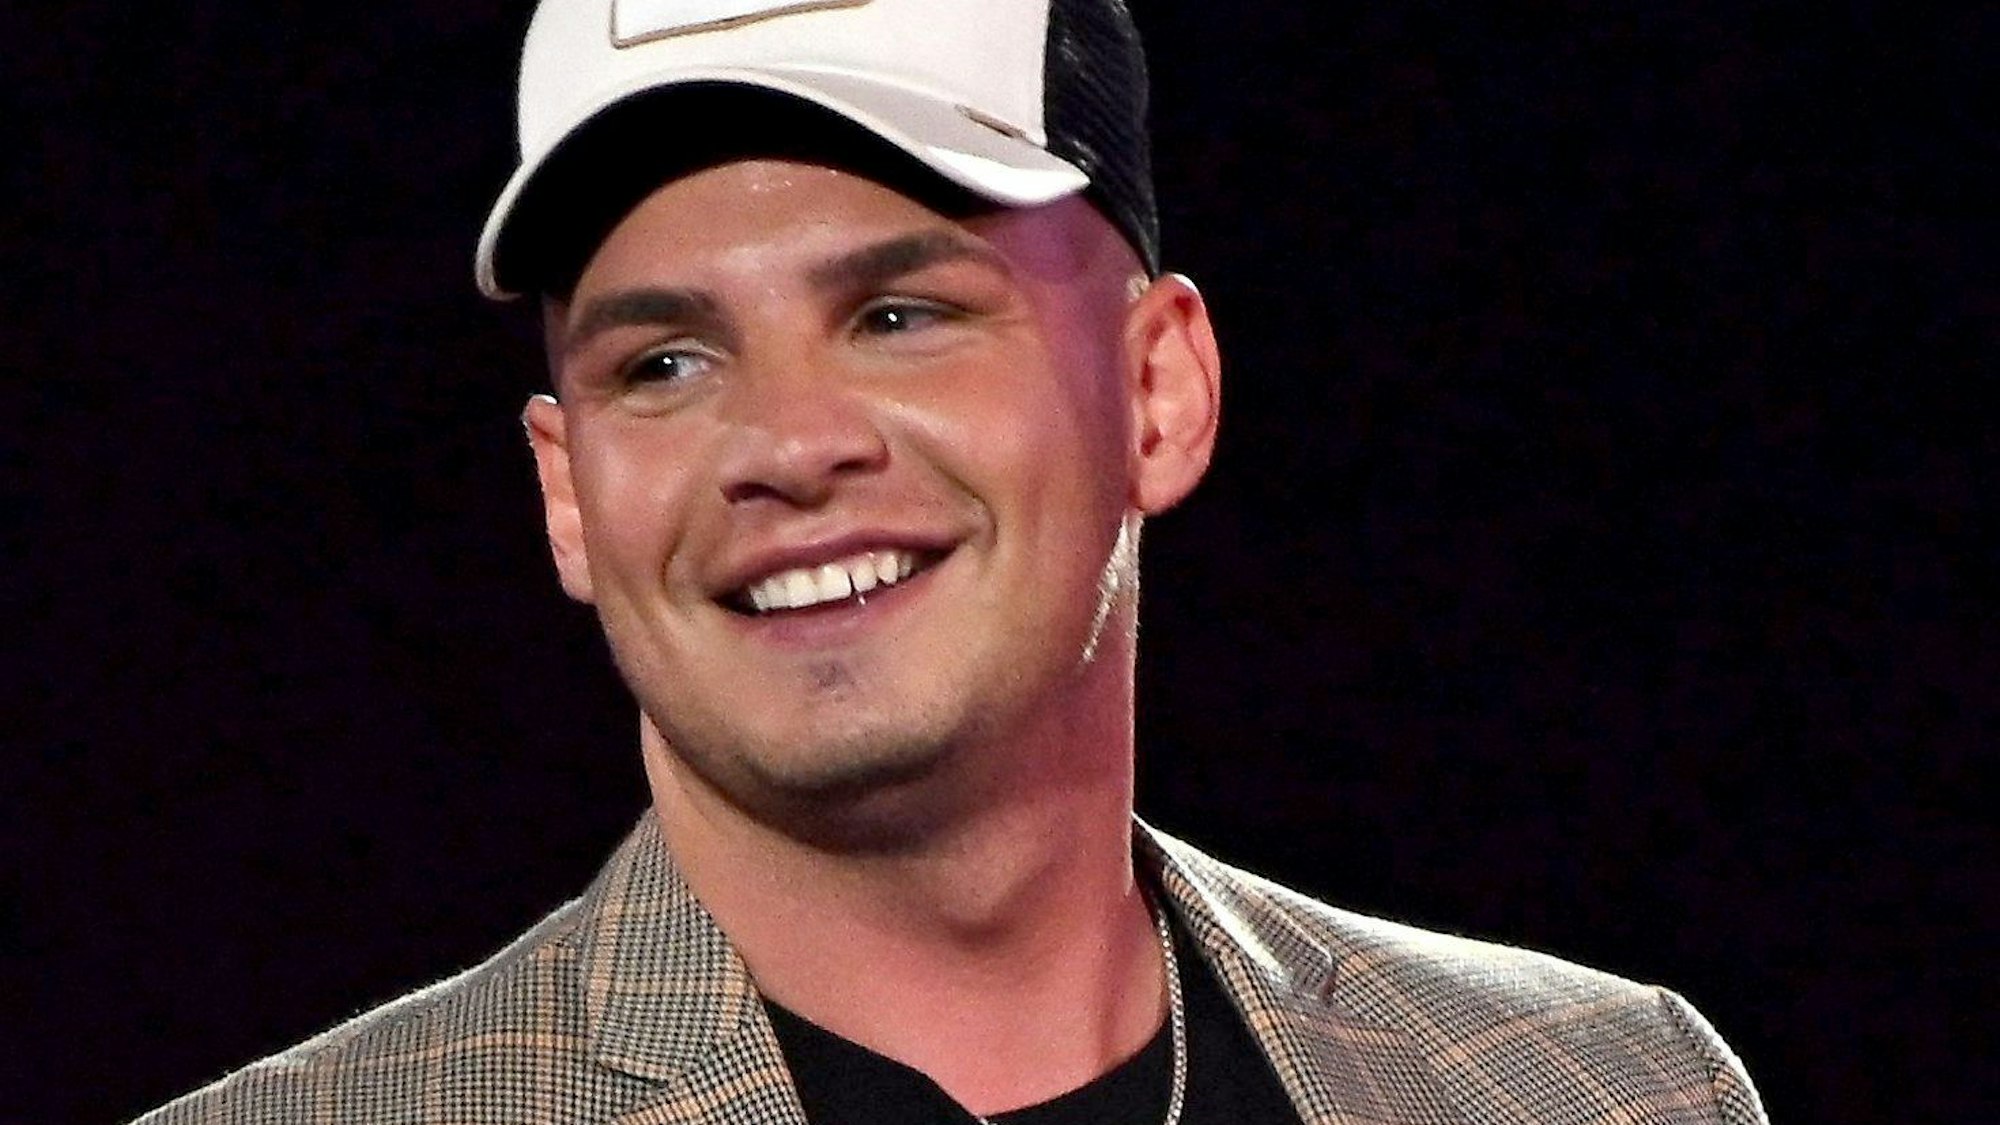 Der Sänger Pietro Lombardi lächelt in derARD-Fernsehshow „Schlagerbooom 2019“.